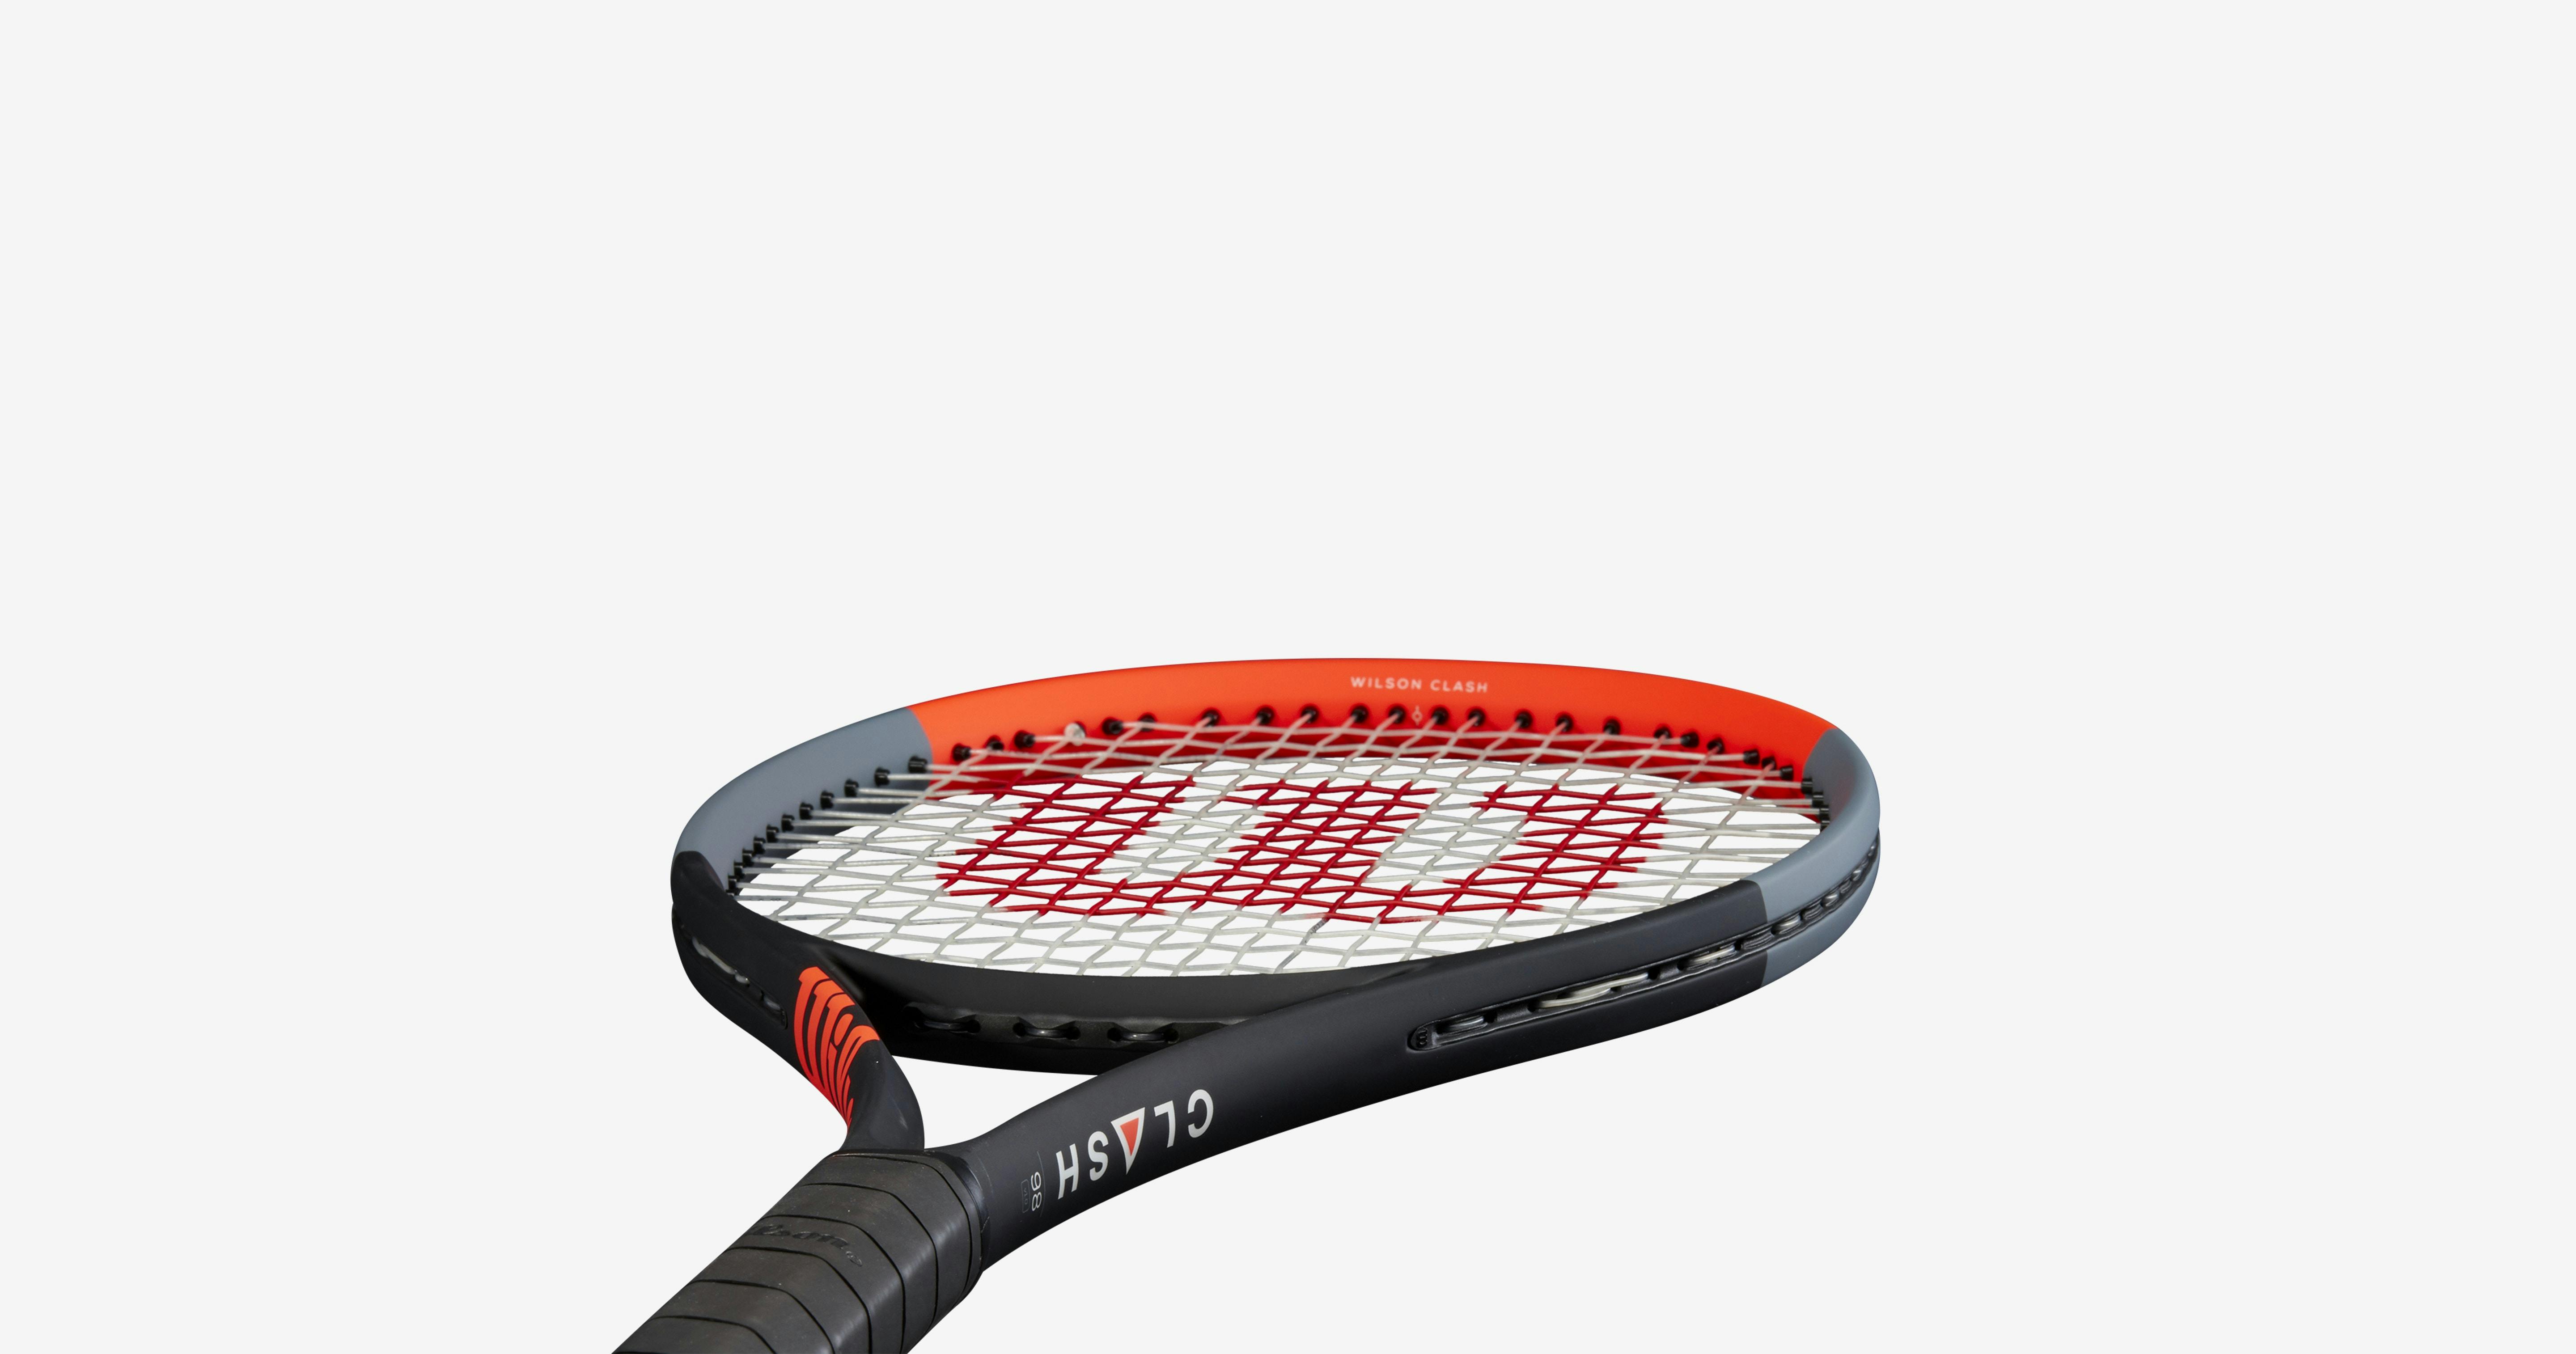 Wilson Clash 98 Racquet · Unstrung